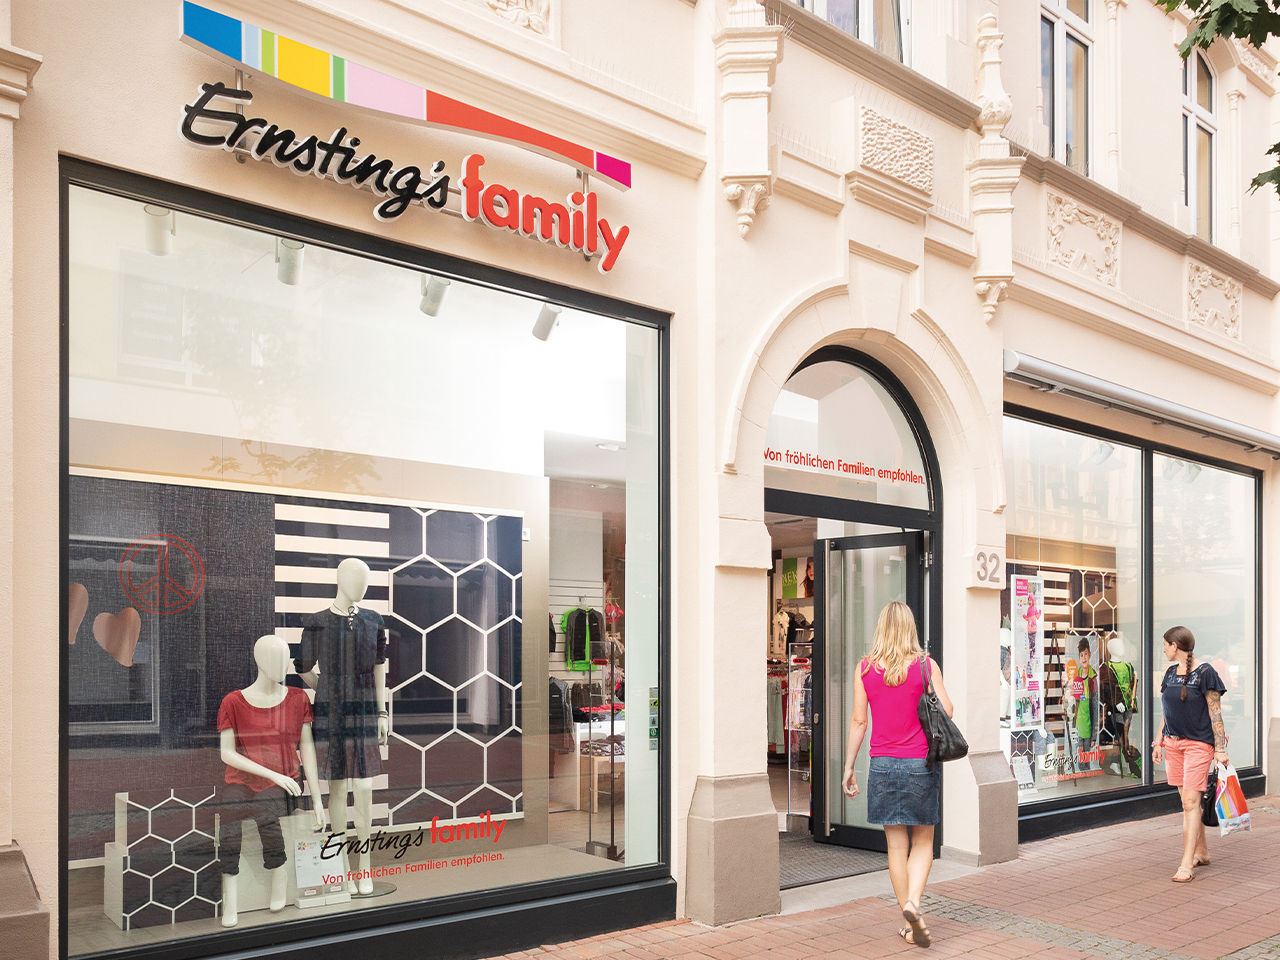 Ernsting’s family storefront on shopping street